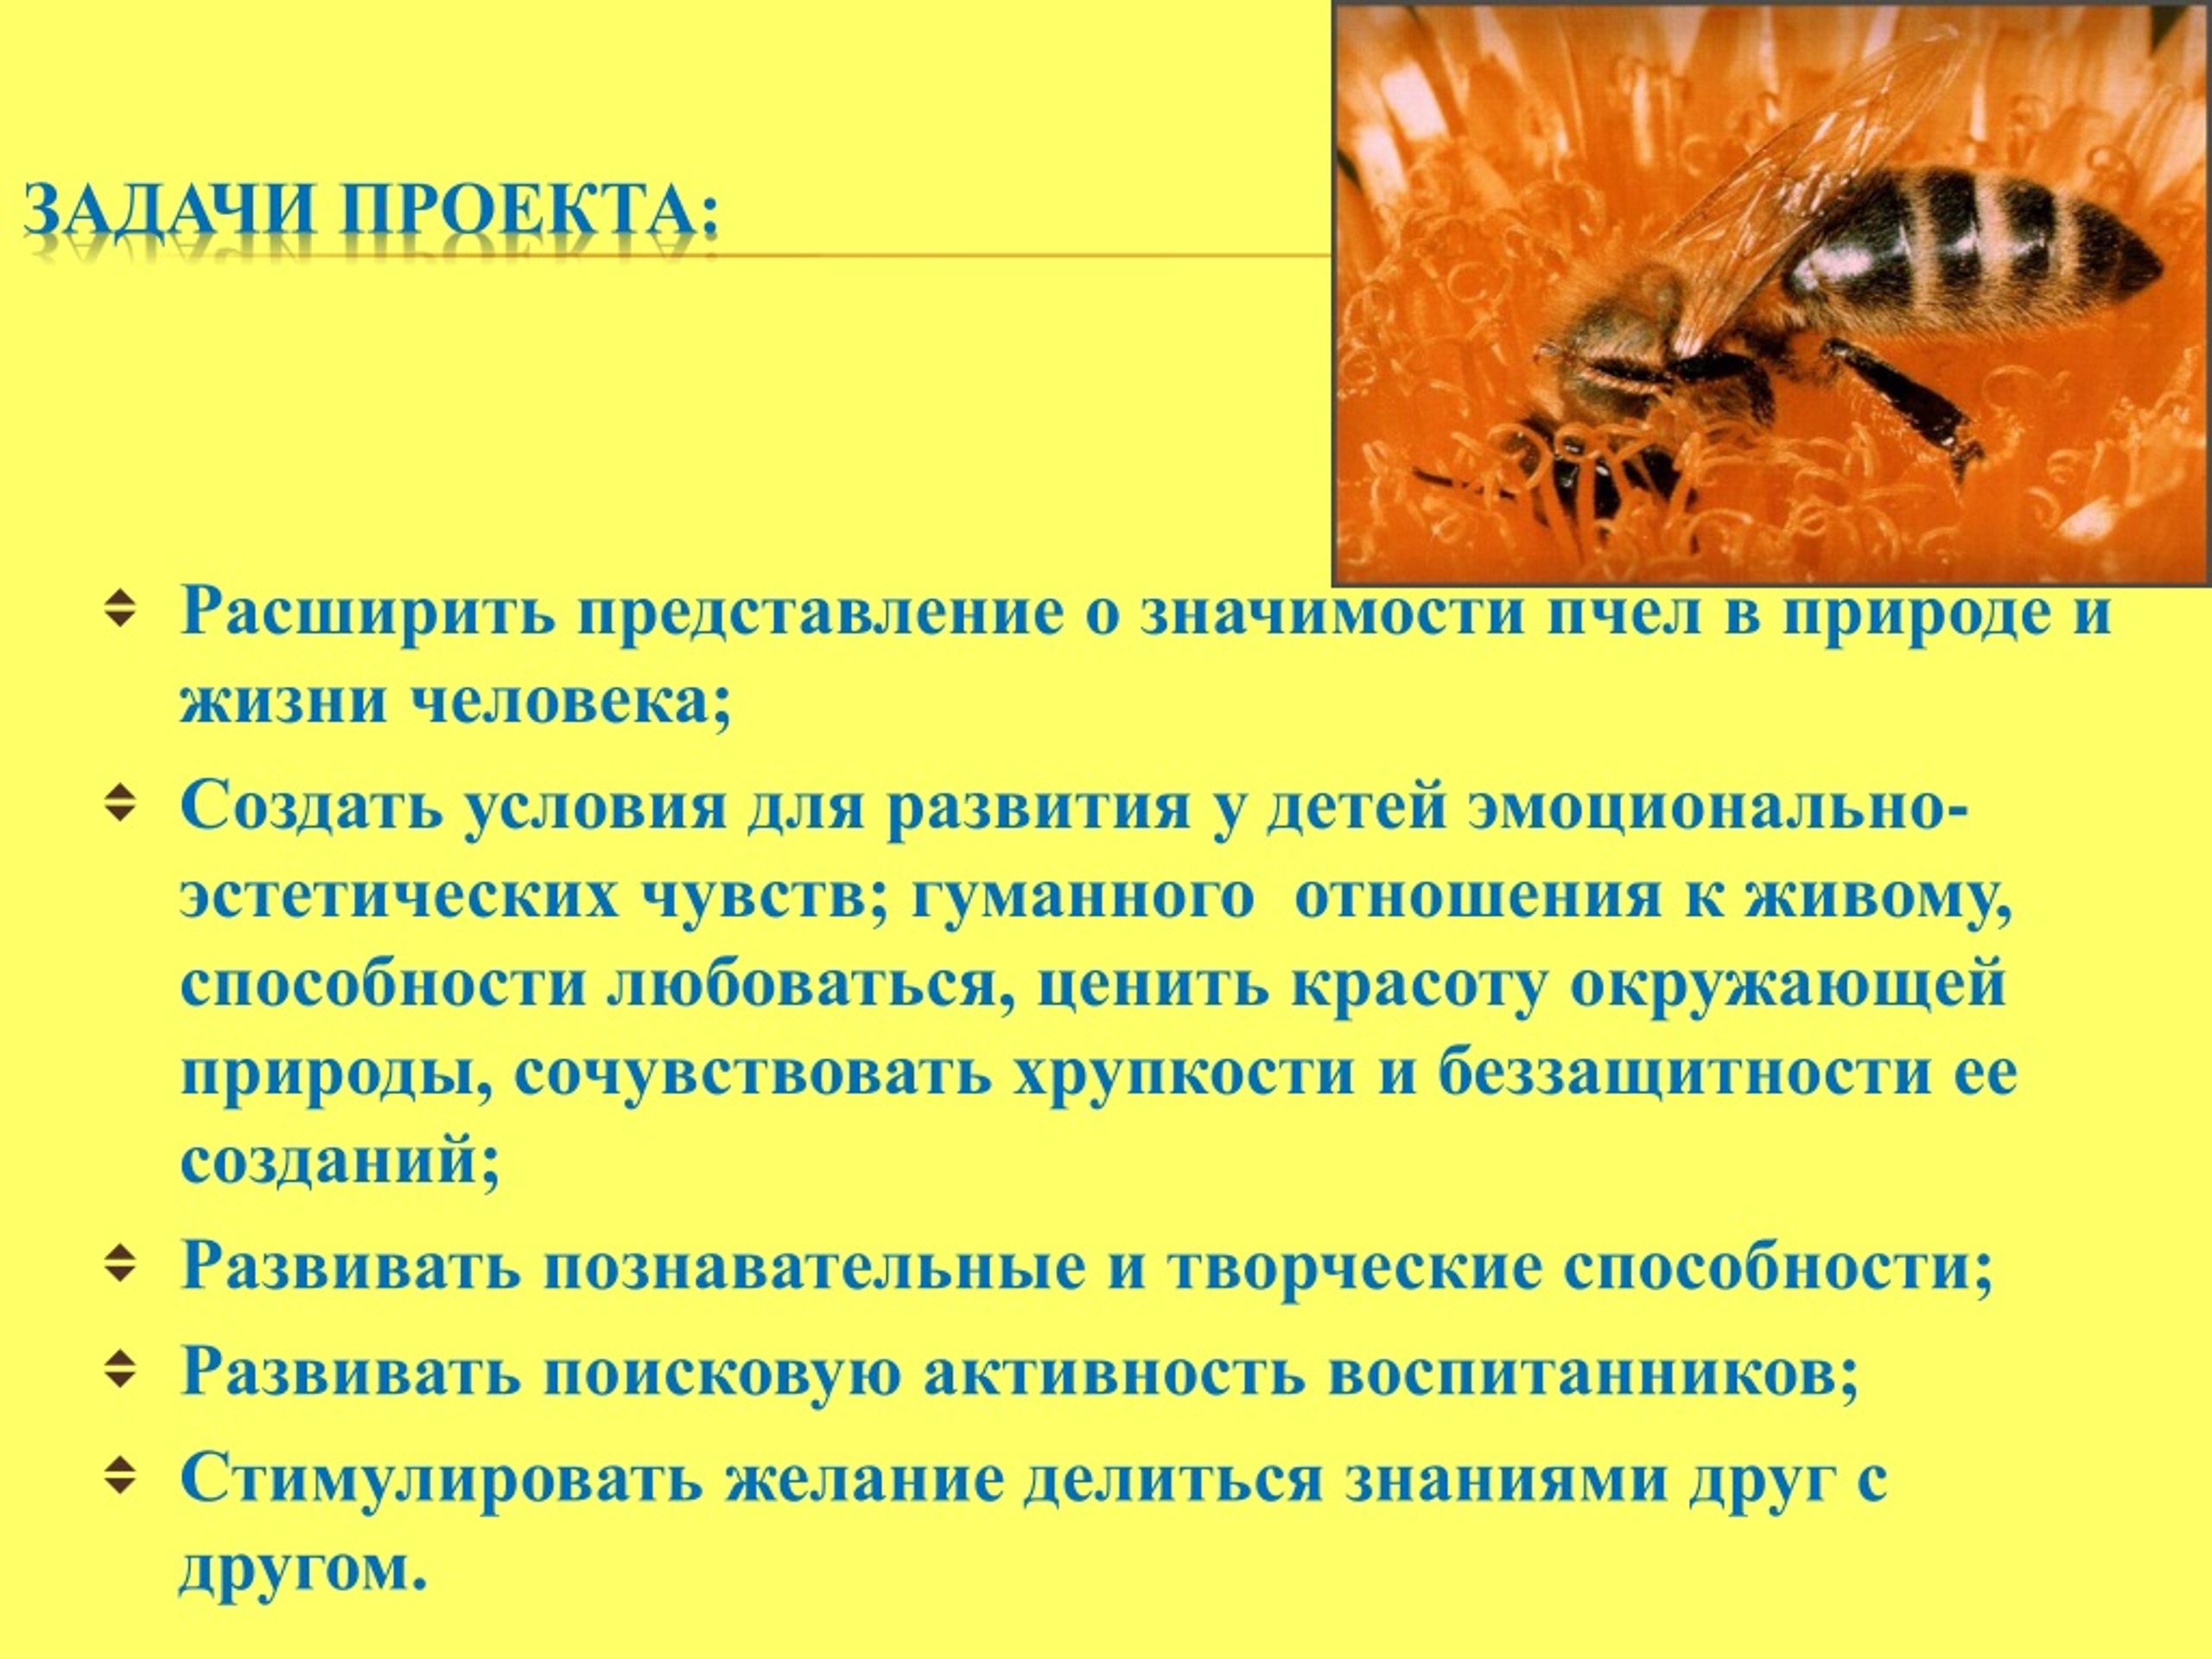 Пчелы в жизни человека. Задачи для проекта про пчёл. Роль пчел в природе и жизни человека. Значение пчел в жизни человека. Значение пчёл в природе и жизни человека.